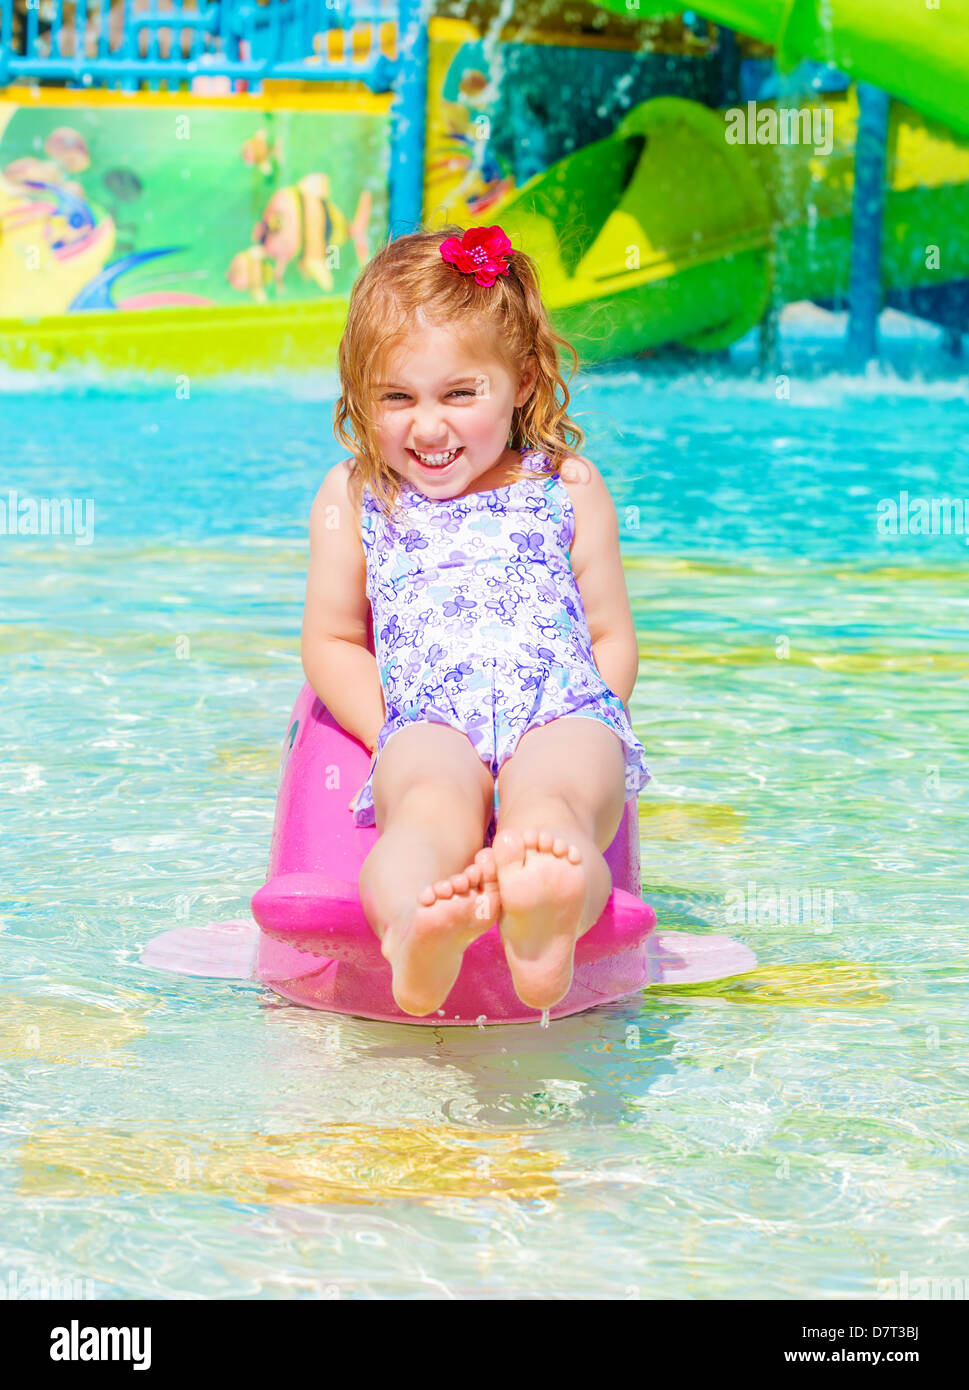 Allegro sorridente bambina godendo di attrazioni acquatiche, giorno caldo e soleggiato, nuoto in piscina, infanzia spensierata, vacanze estive Foto Stock